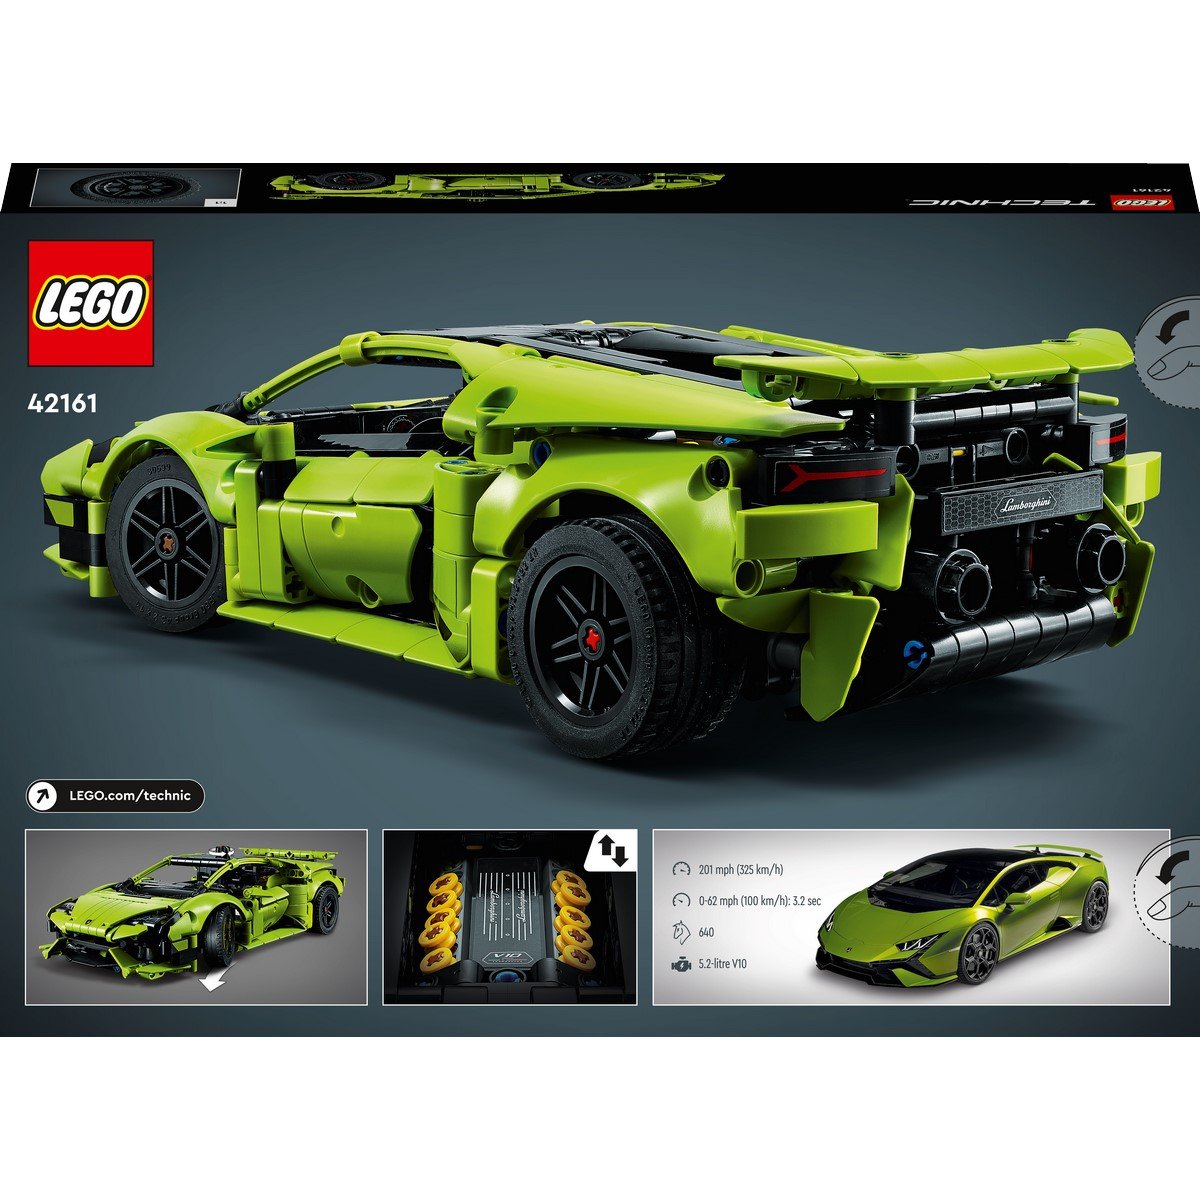 Soldes LEGO : -28% sur la Lamborghini, un des ensembles les plus